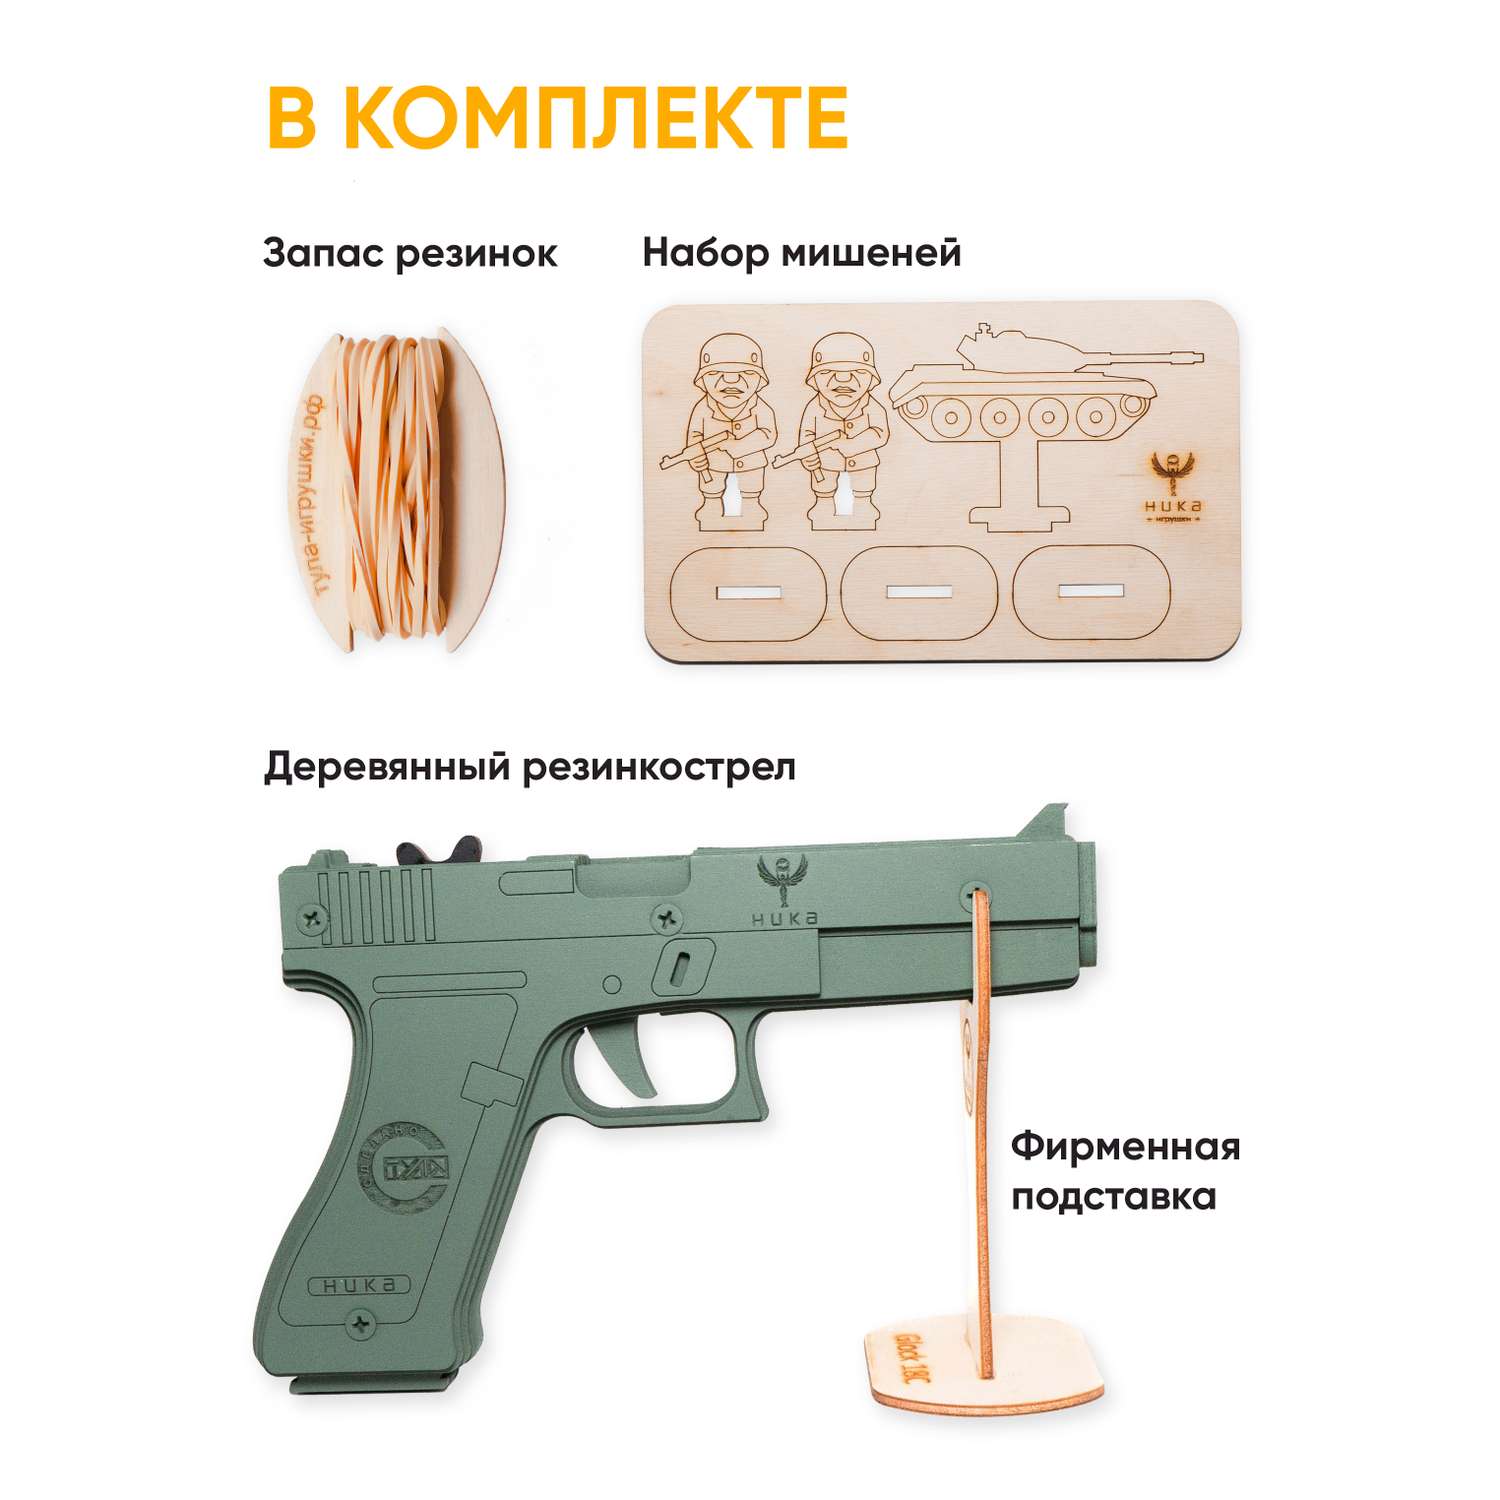 Резинкострел НИКА игрушки Пистолет Glock 18C (G) в подарочной упаковке - фото 2